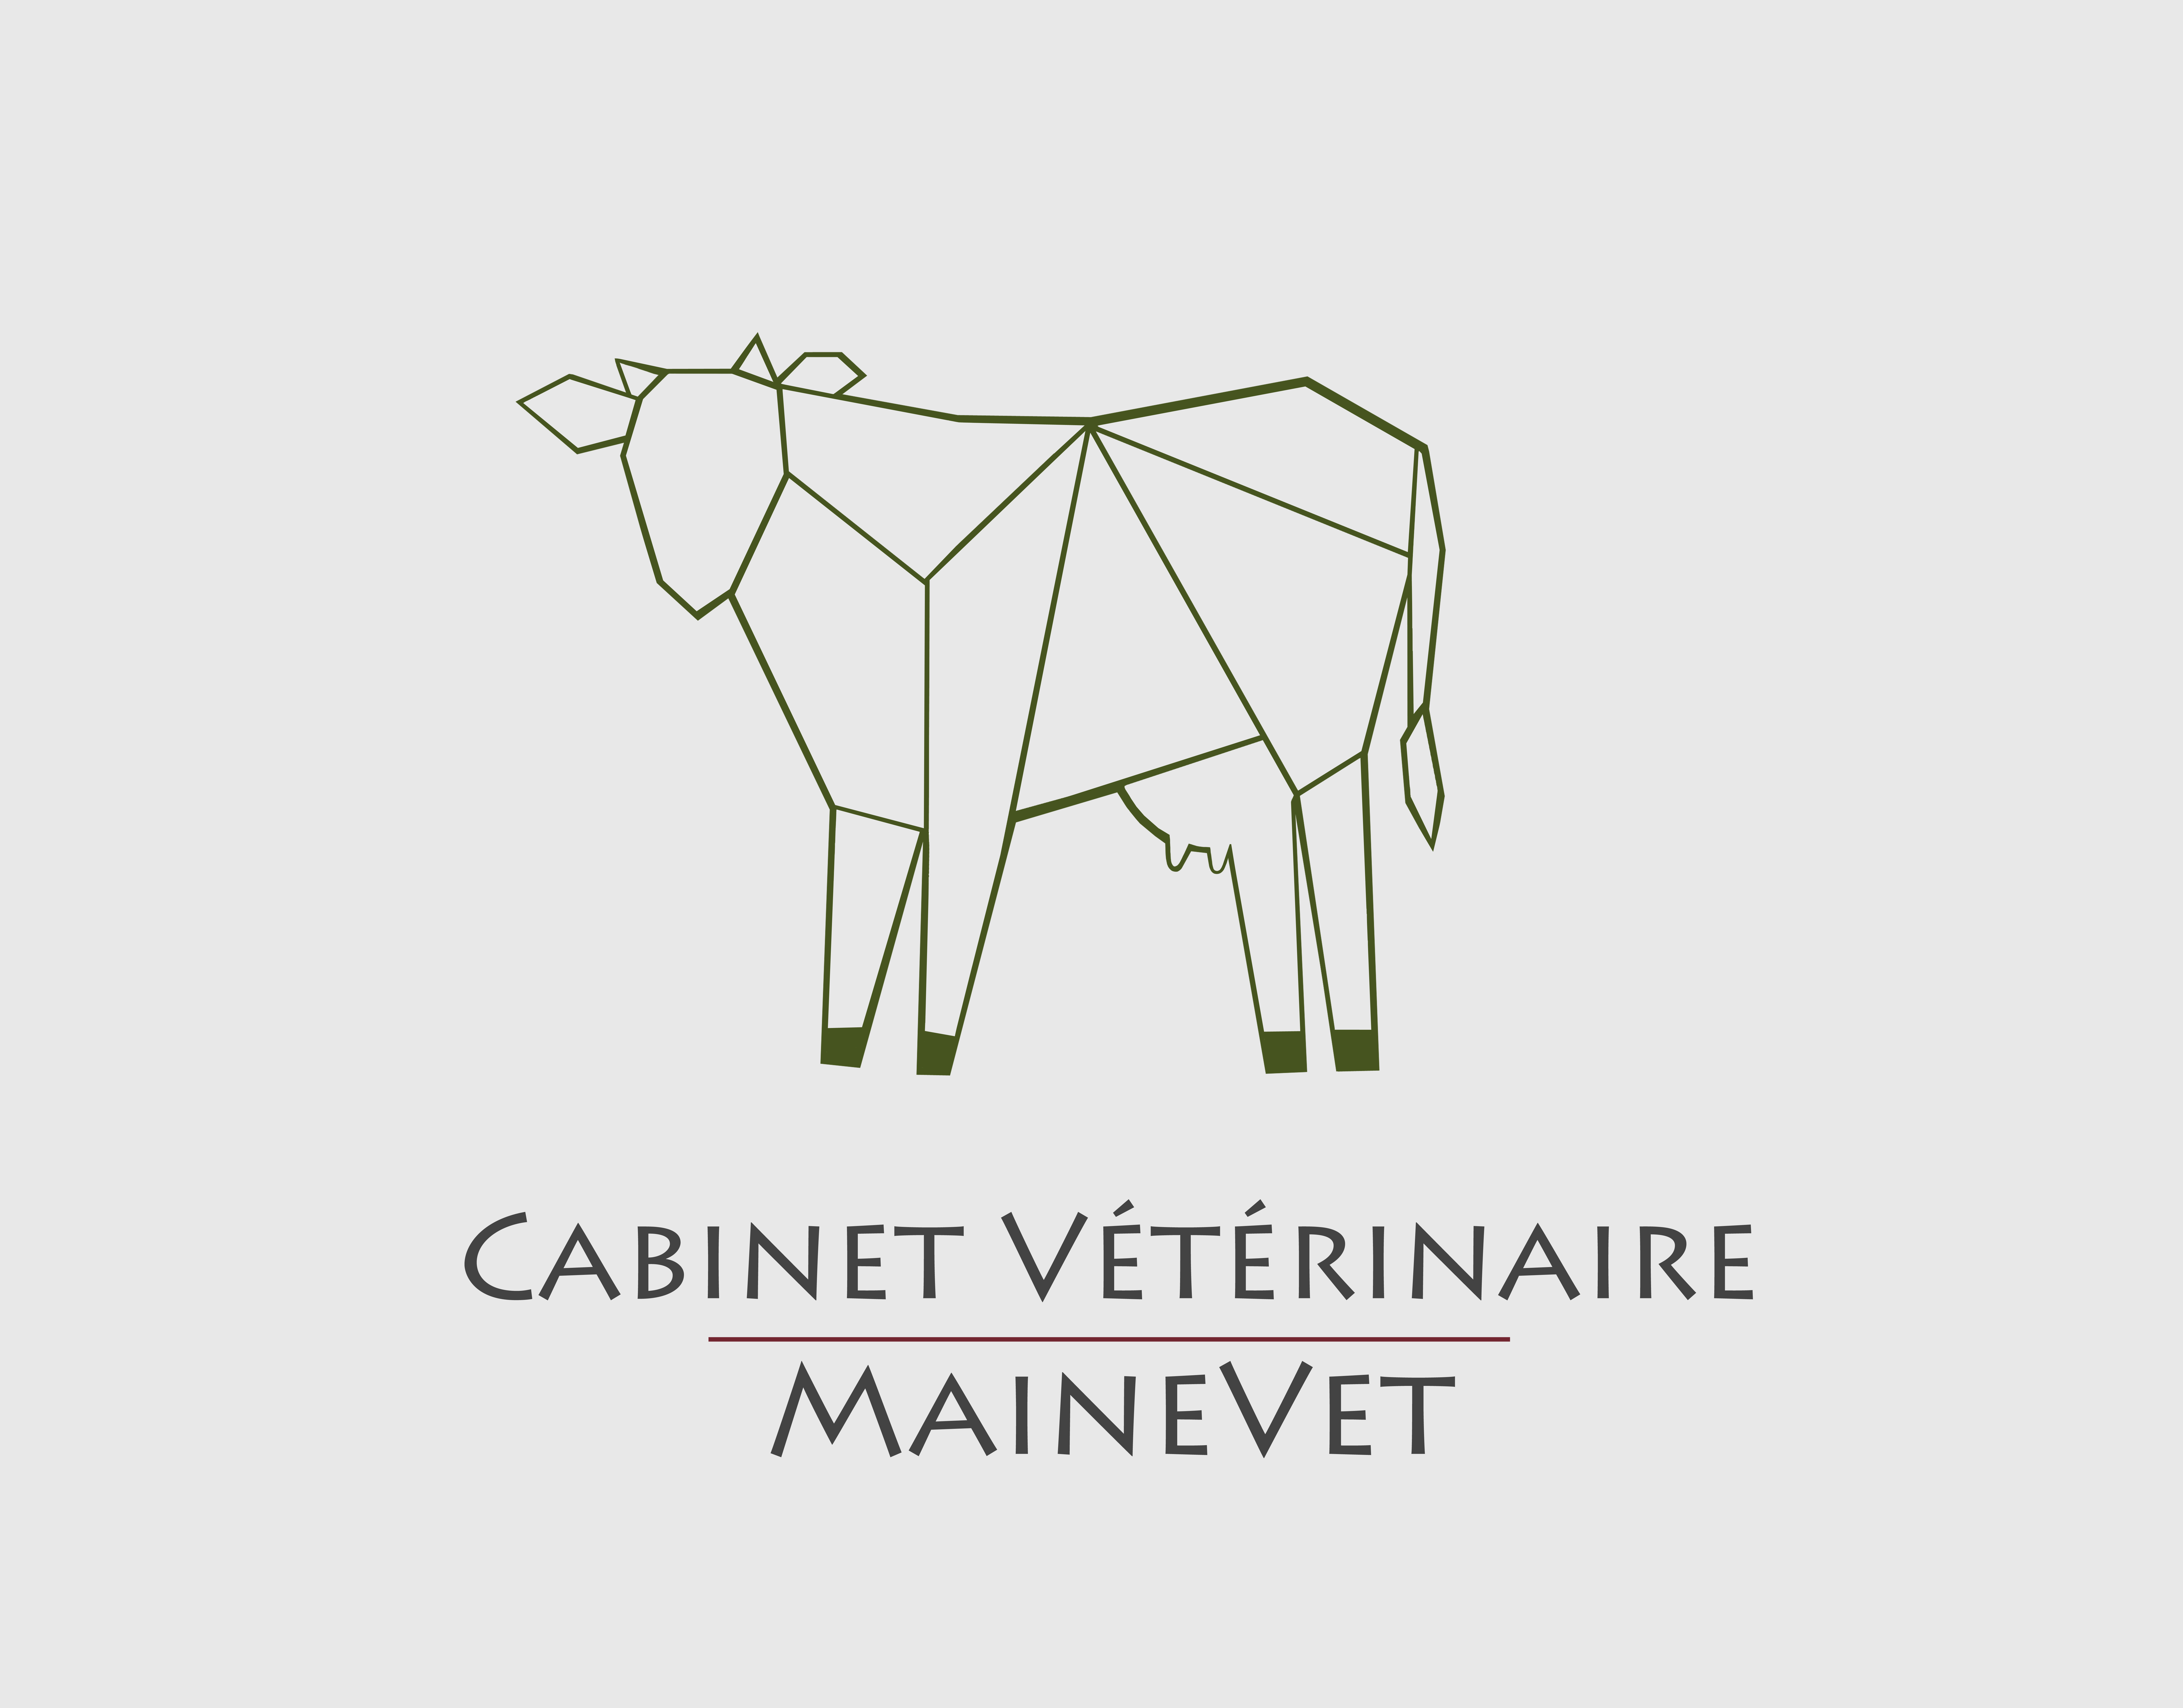 Cabinet Vétérinaire Mainevet